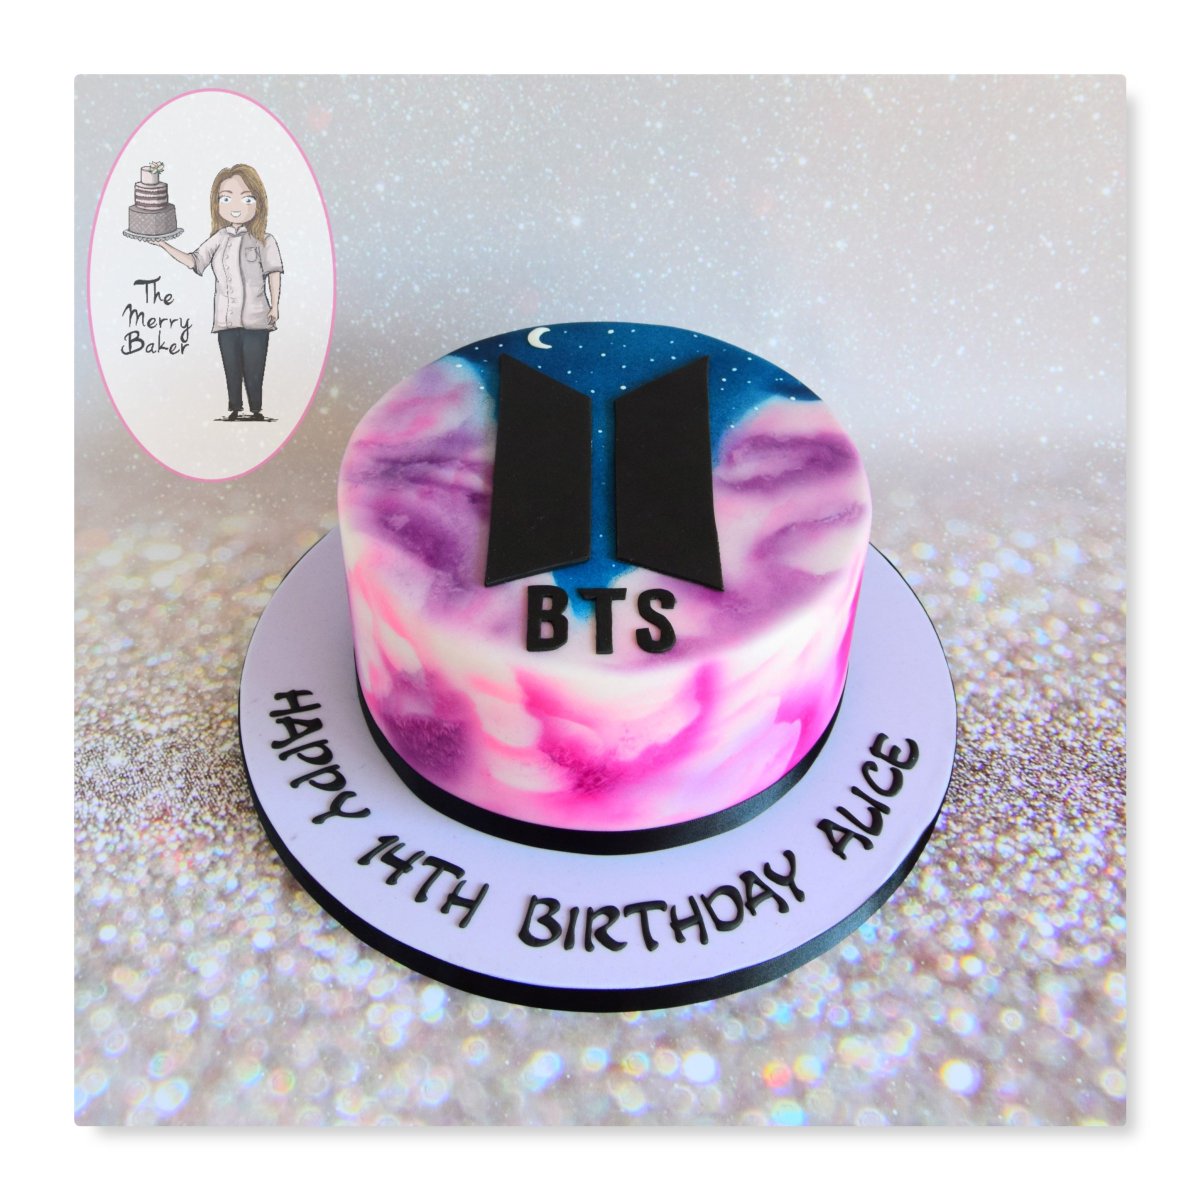 See more ideas about bts, bts birthdays, bts cake. 